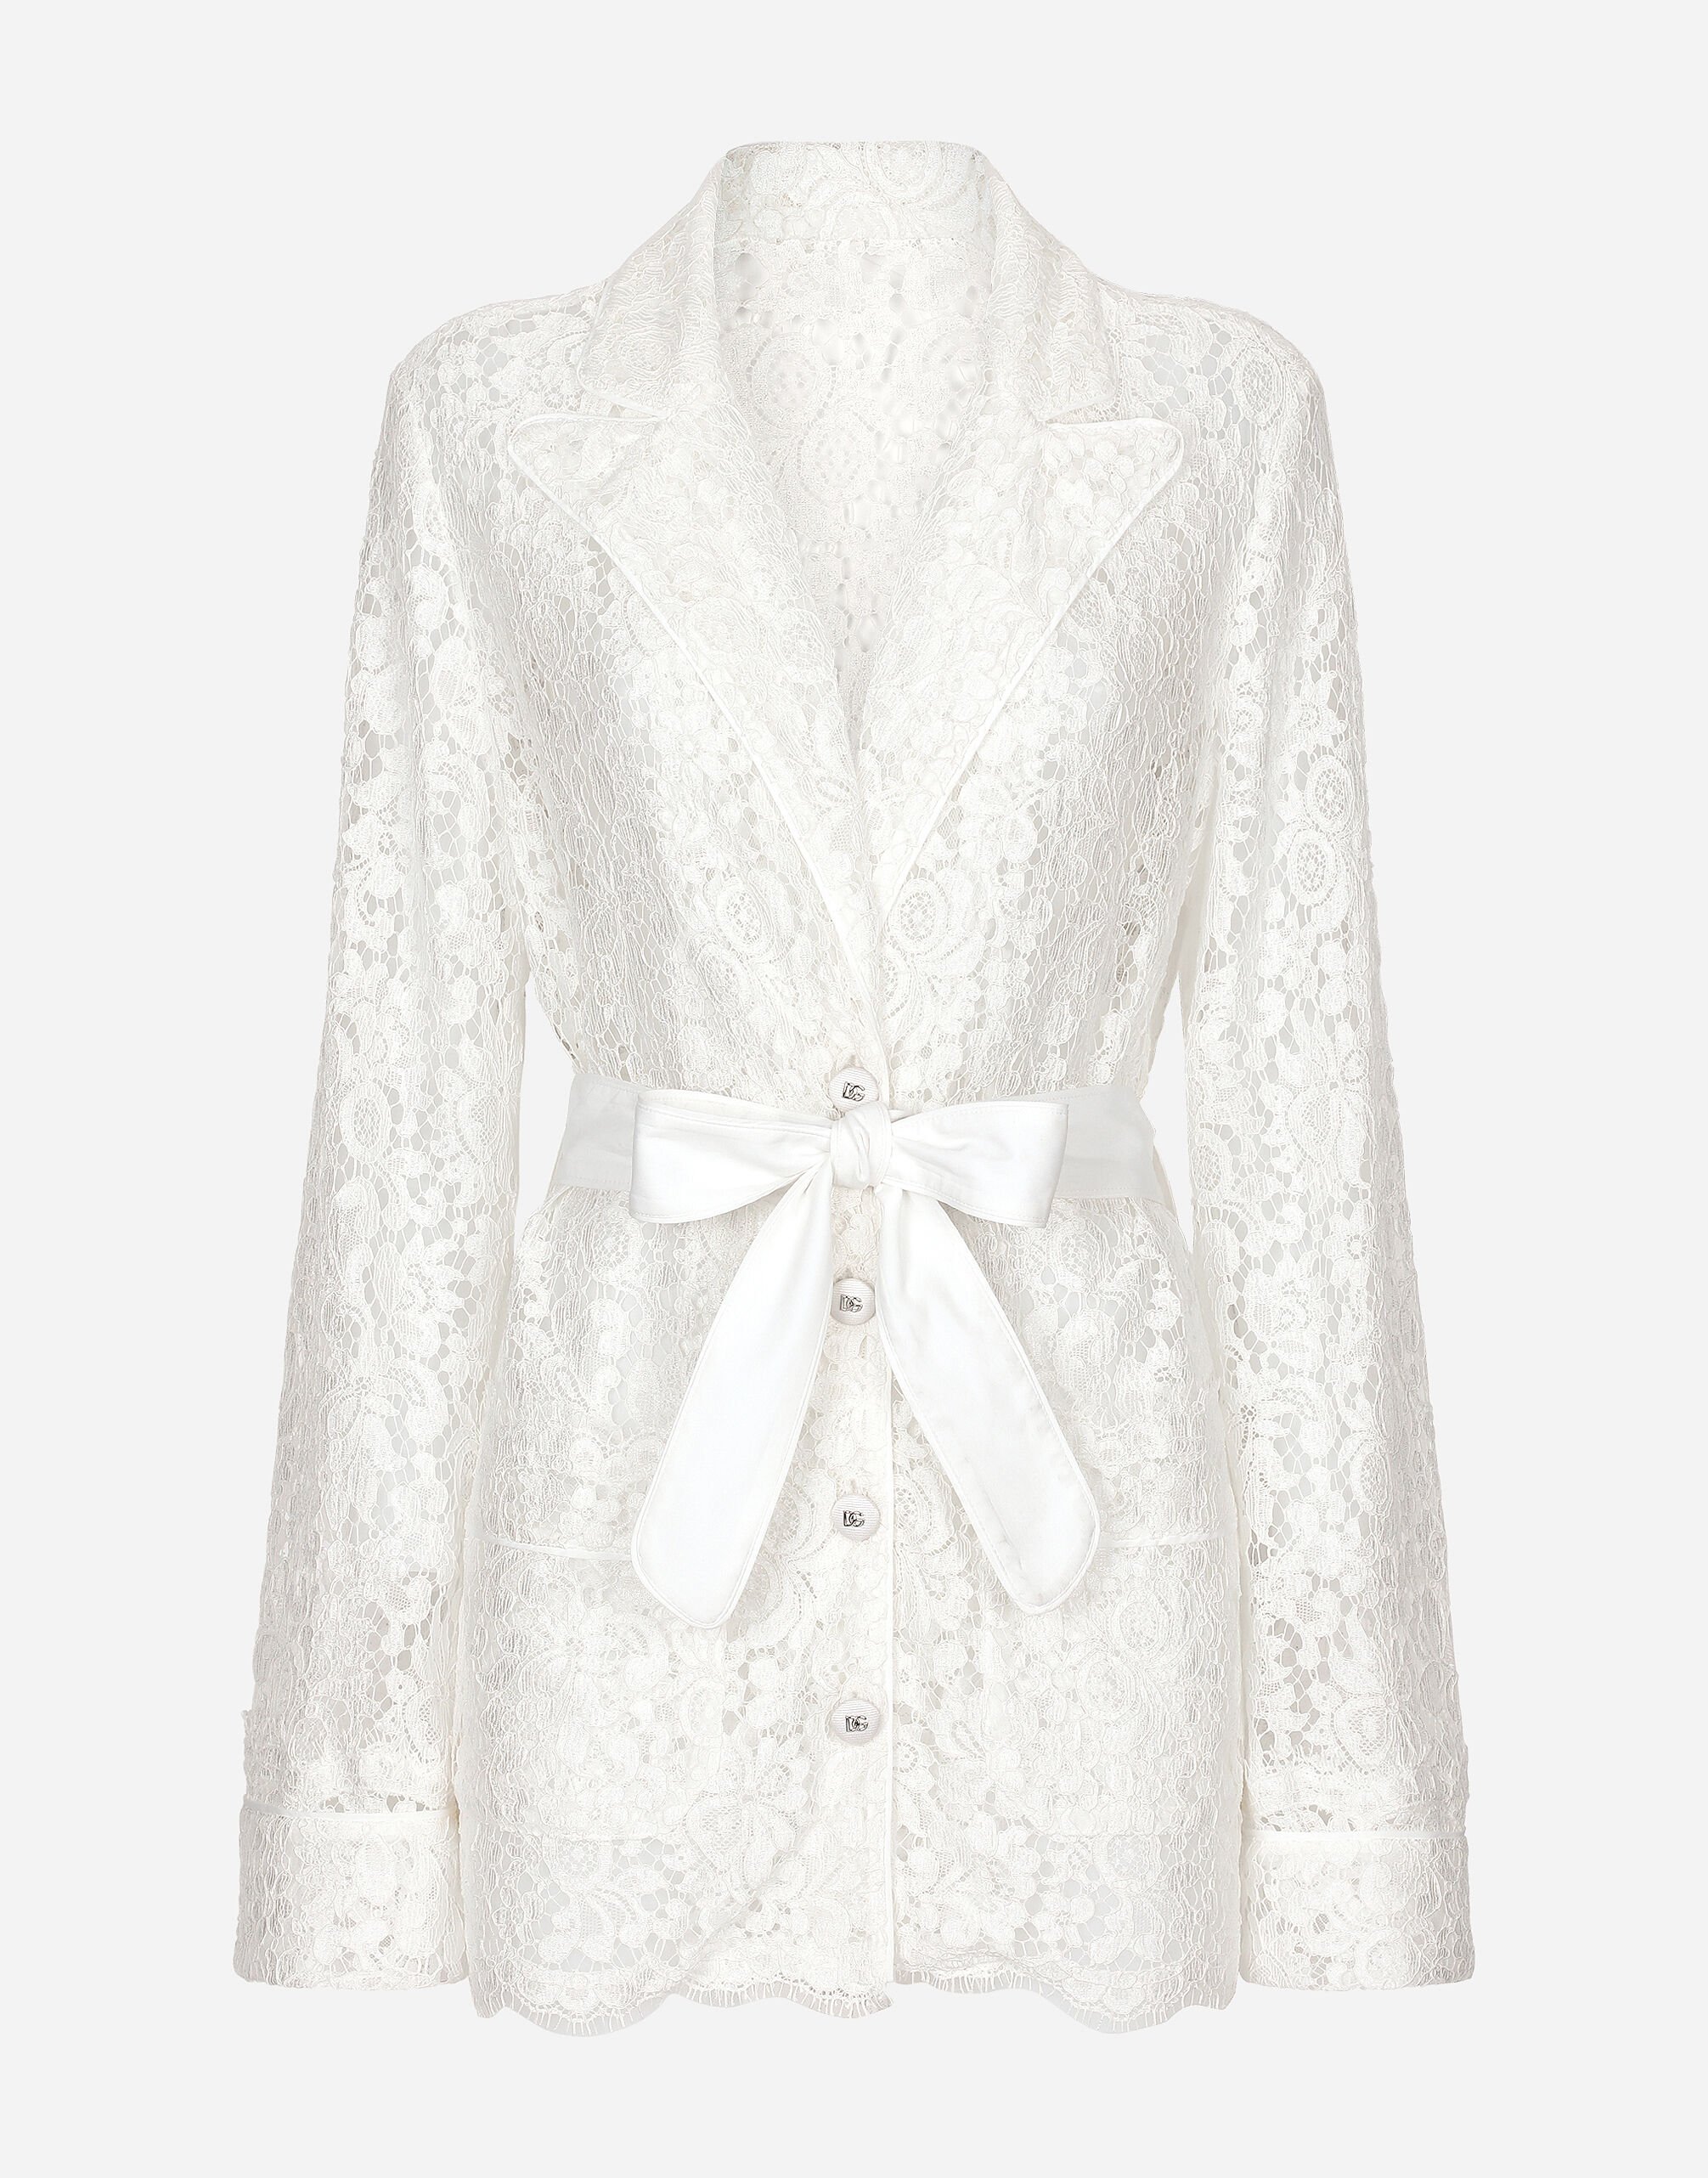 Dolce & Gabbana Camicia pigiama in pizzo cordonetto floreale Giallo F29UCTHJMOK